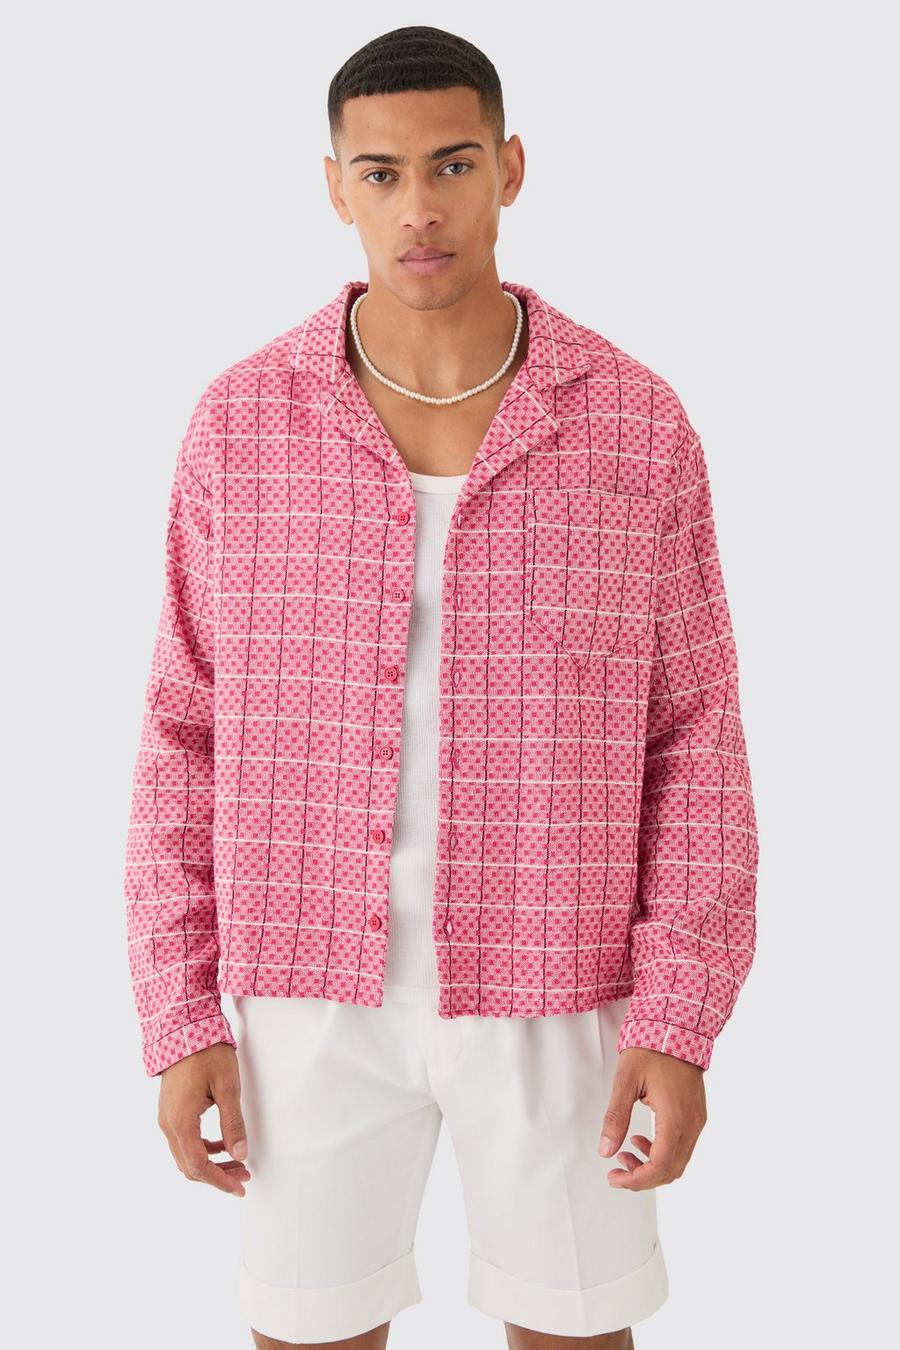 Camisa recta texturizada de manga larga con cuadros, Pink